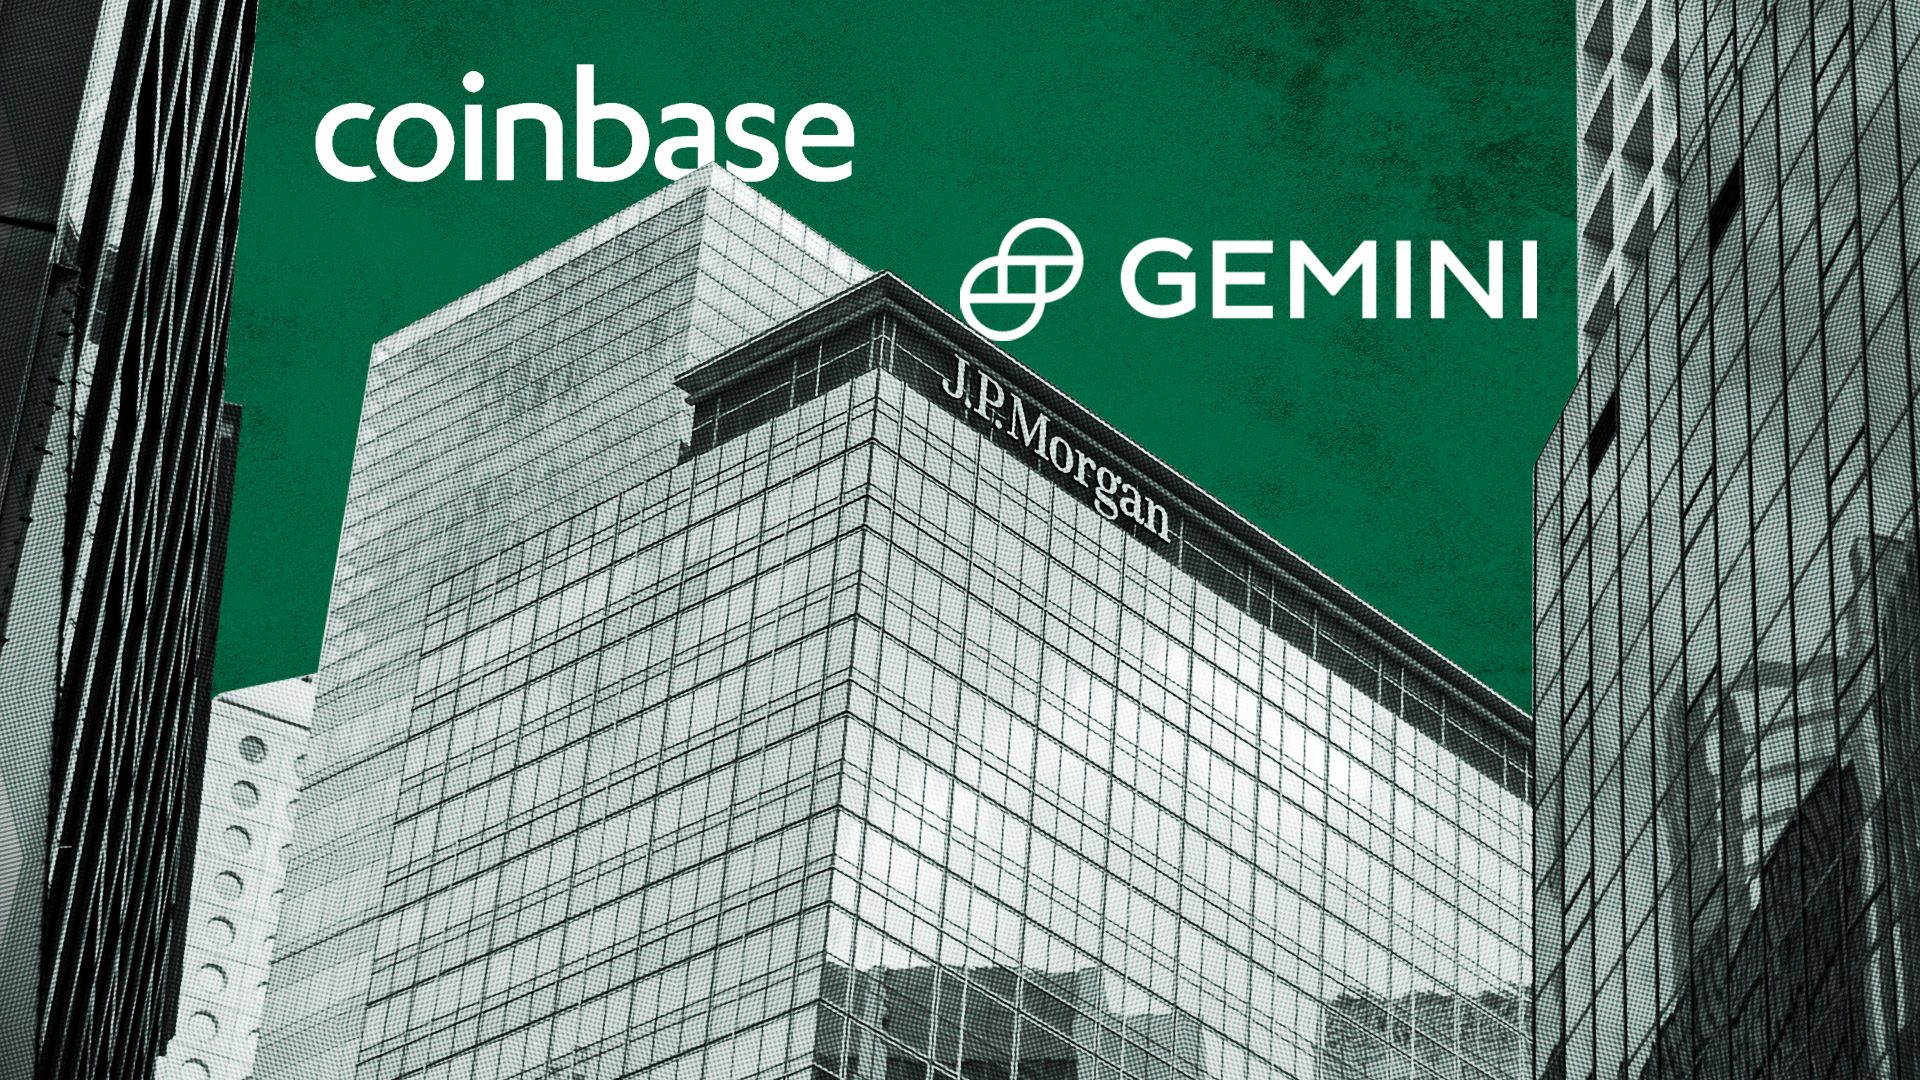 JPMorgan Chase sẽ cung cấp dịch vụ ngân hàng cho sàn giao dịch tiền điện tử Coinbase và Gemini